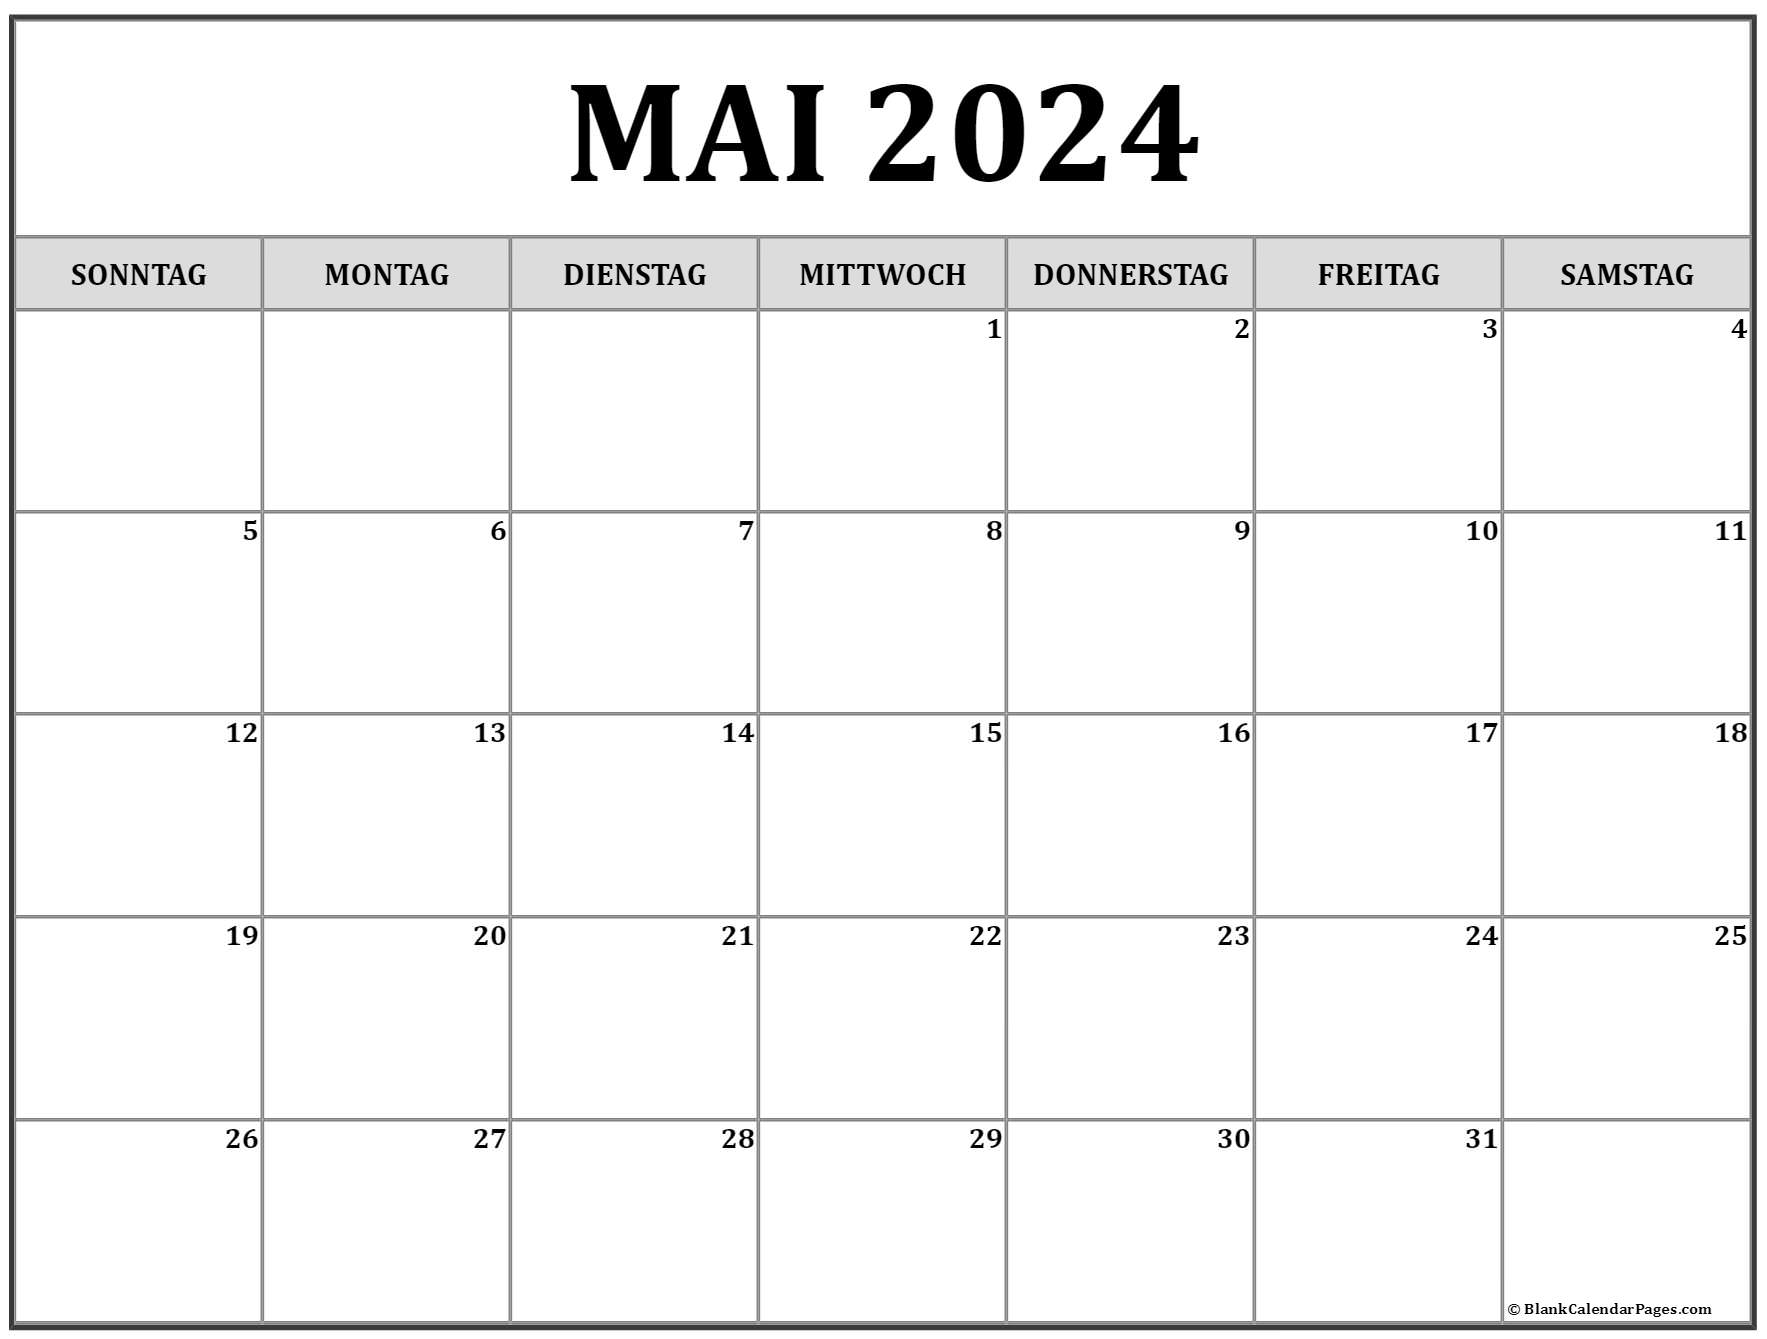  Mai  2022  kalender auf Deutsch kalender 2022 